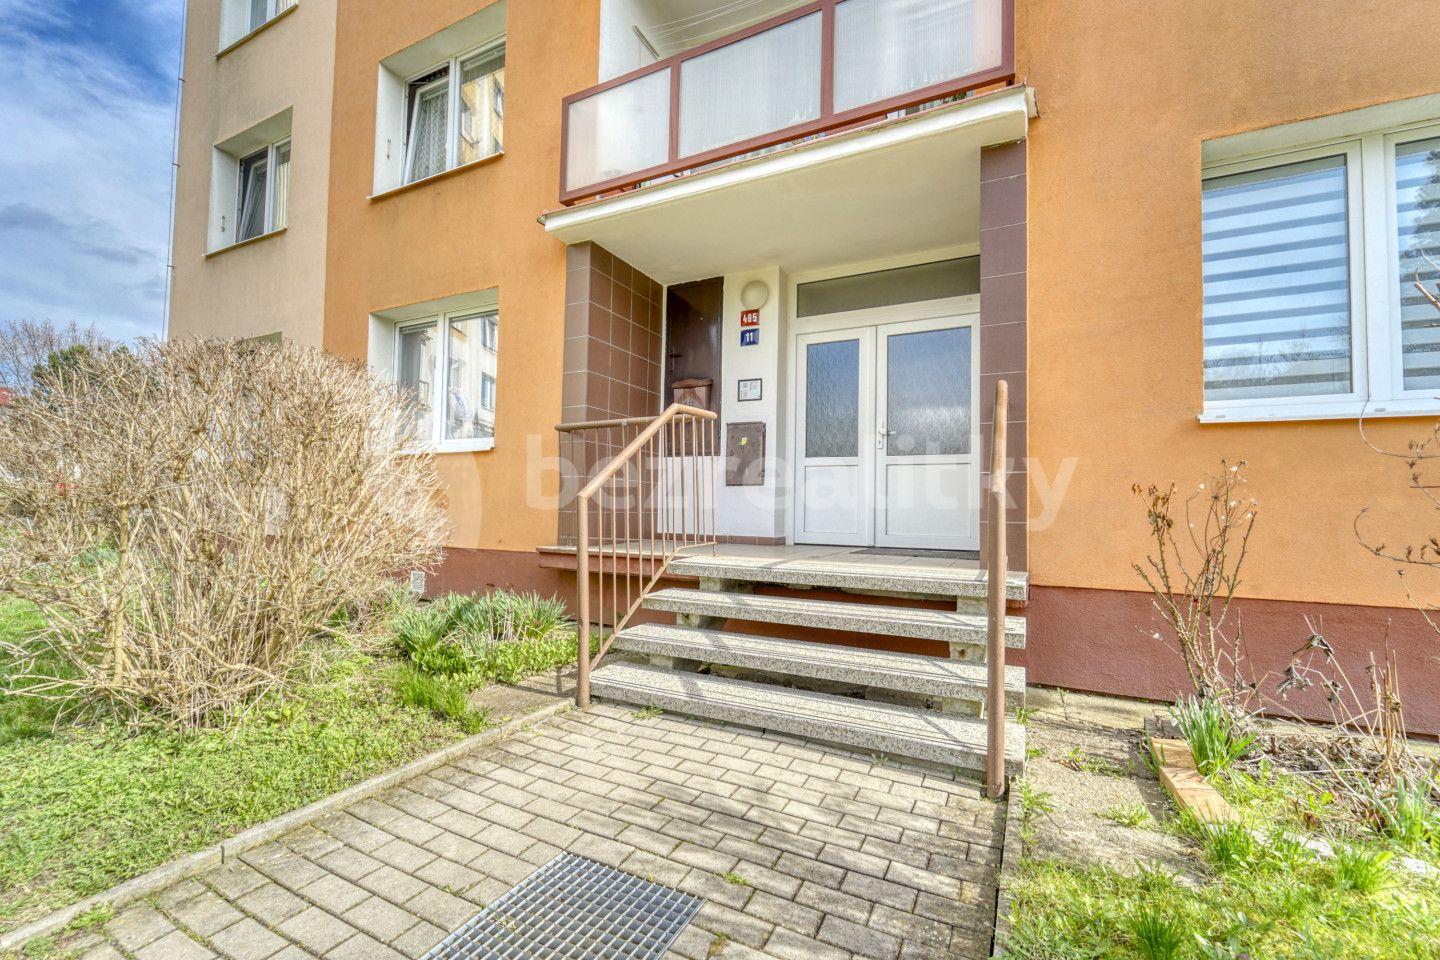 3 bedroom flat for sale, 65 m², Hroznatova, Mariánské Lázně, Karlovarský Region